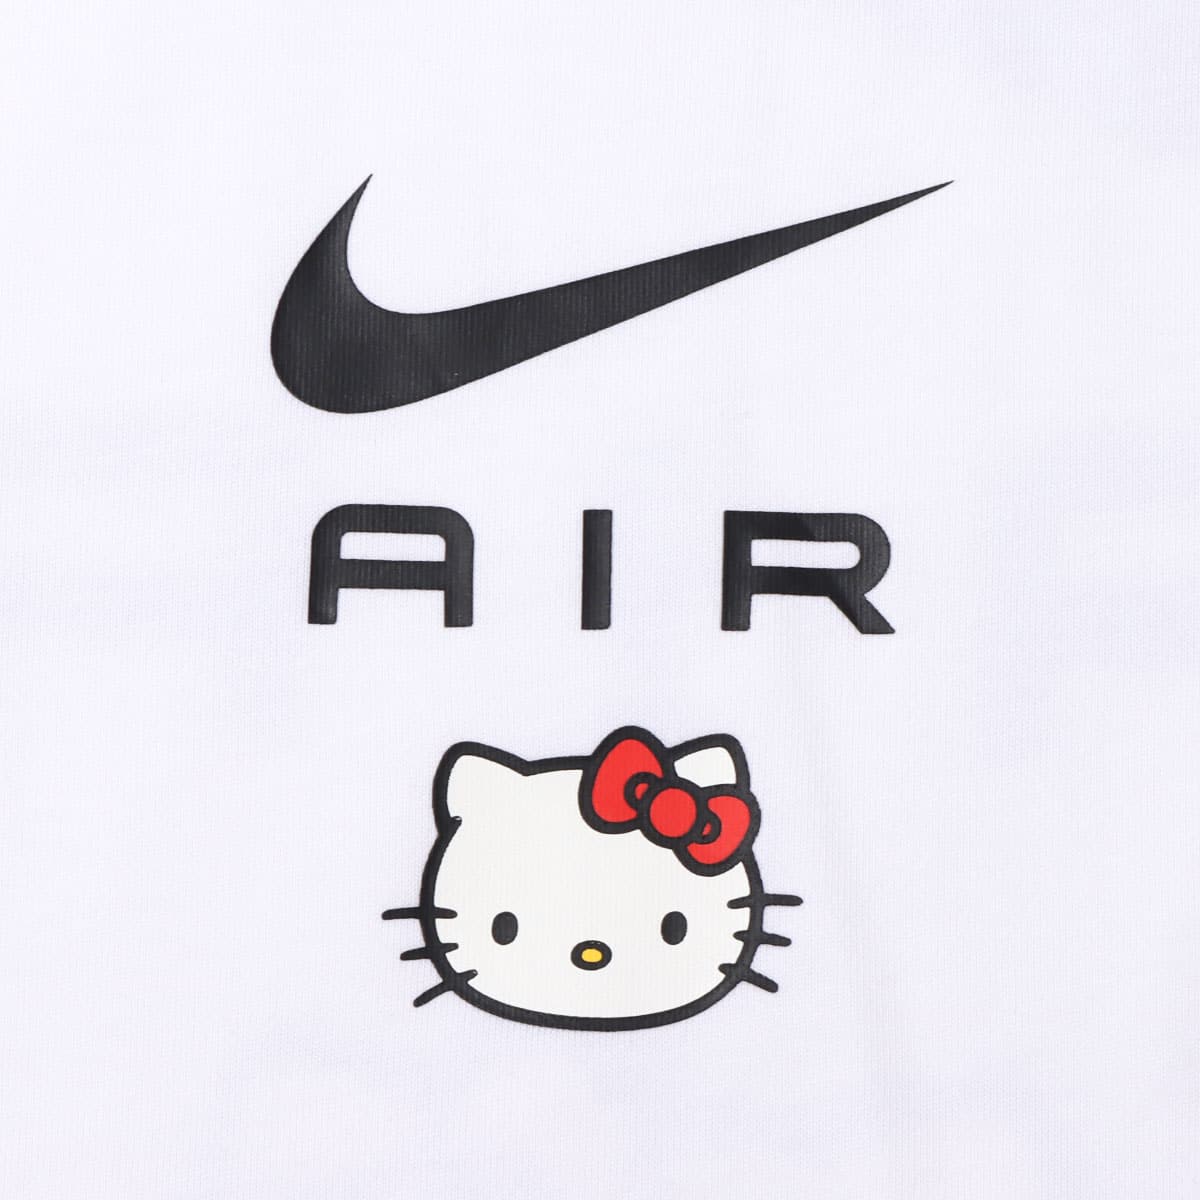 ナイキ x Hello Kitty Tシャツ XS